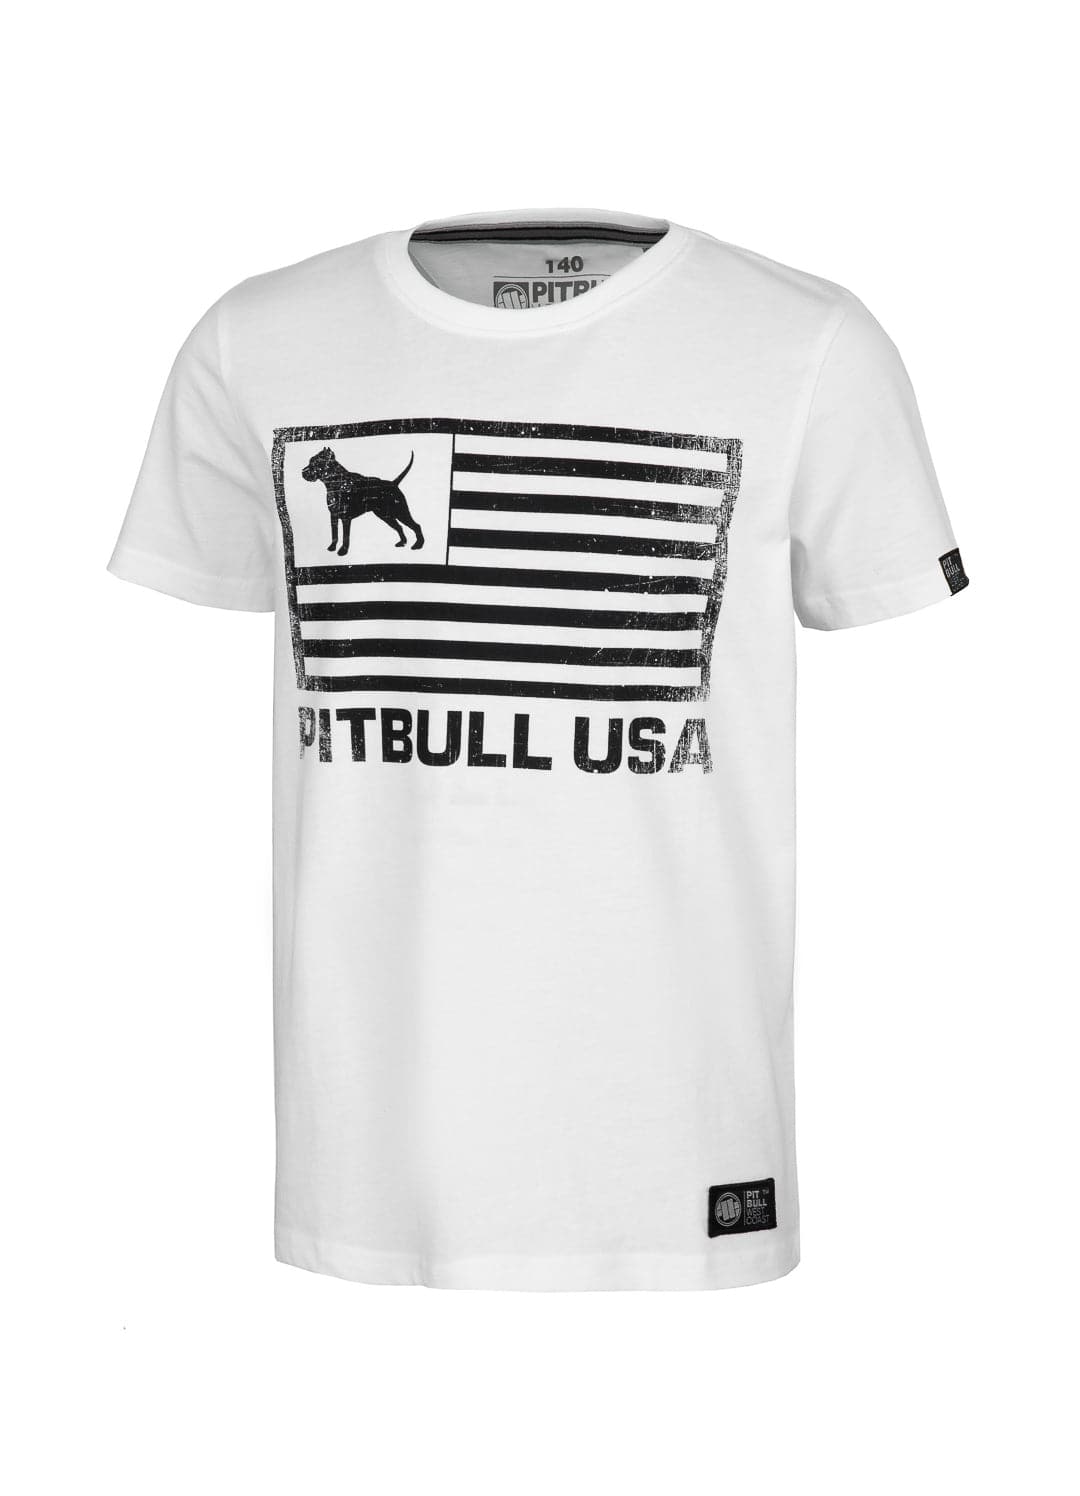 PITBULL USA kids white t-shirt